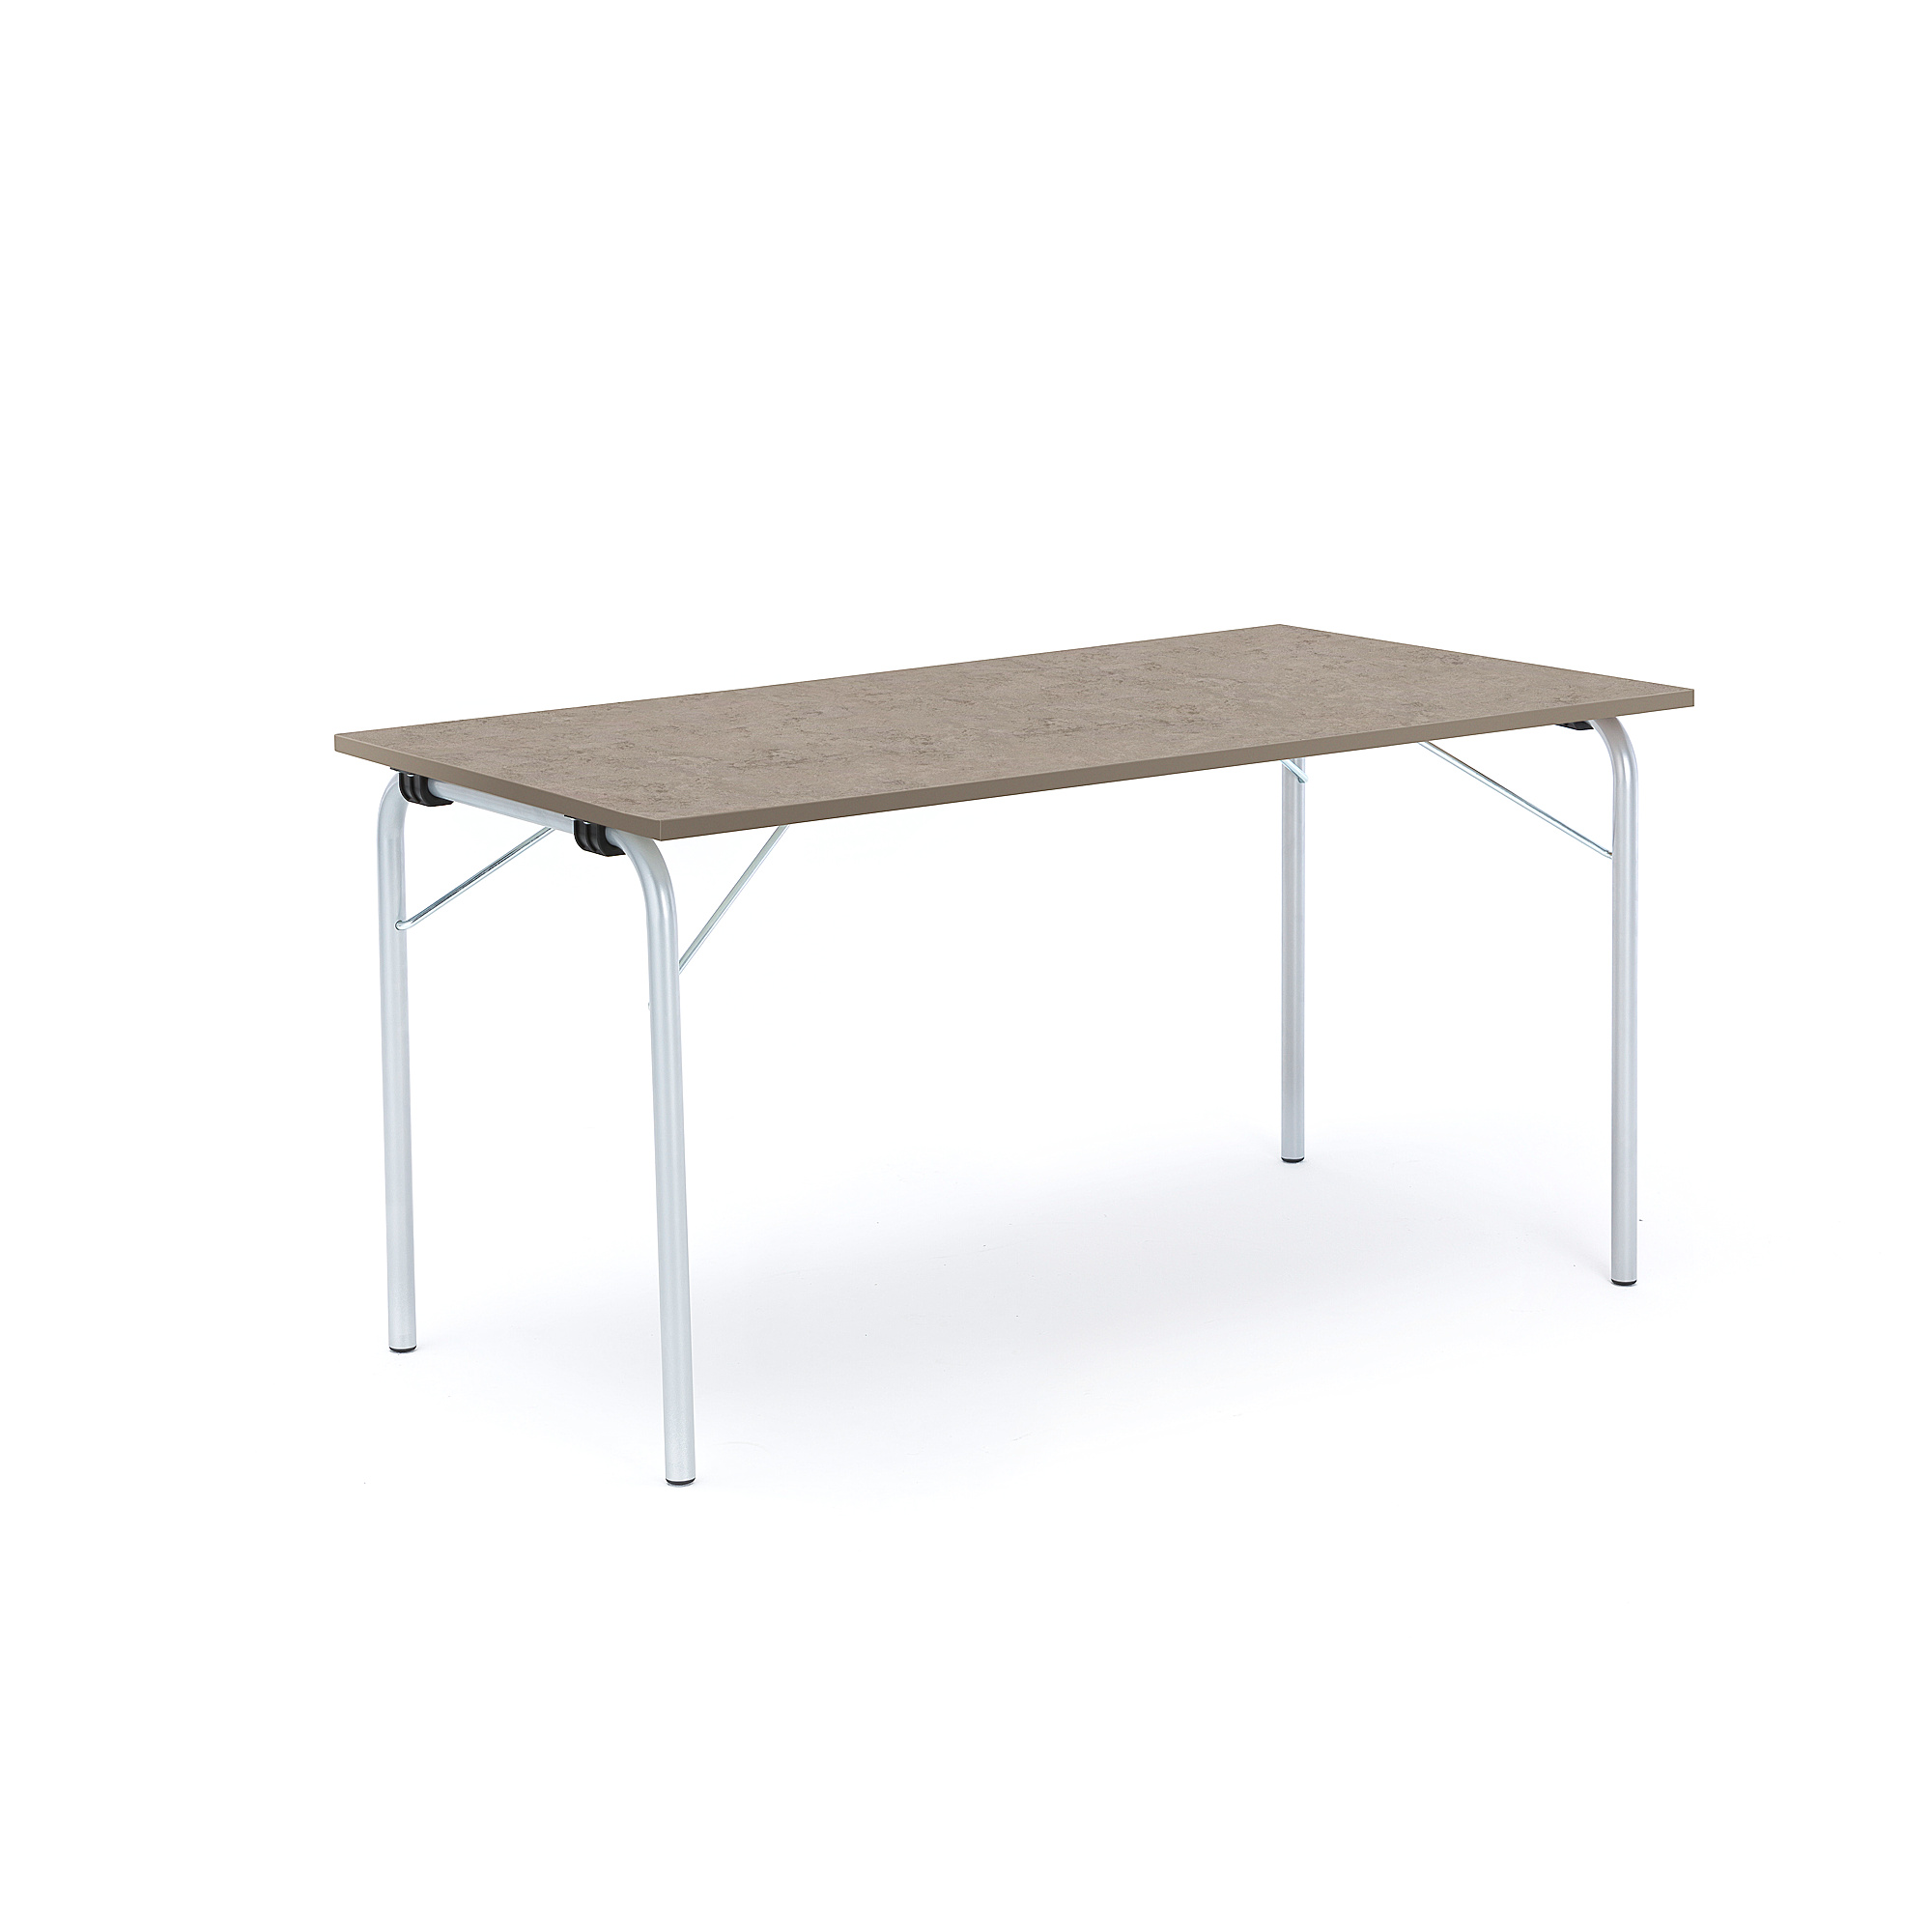 Skládací stůl NICKE, 1400x700x720 mm, stříbrný rám, světle šedé linoleum